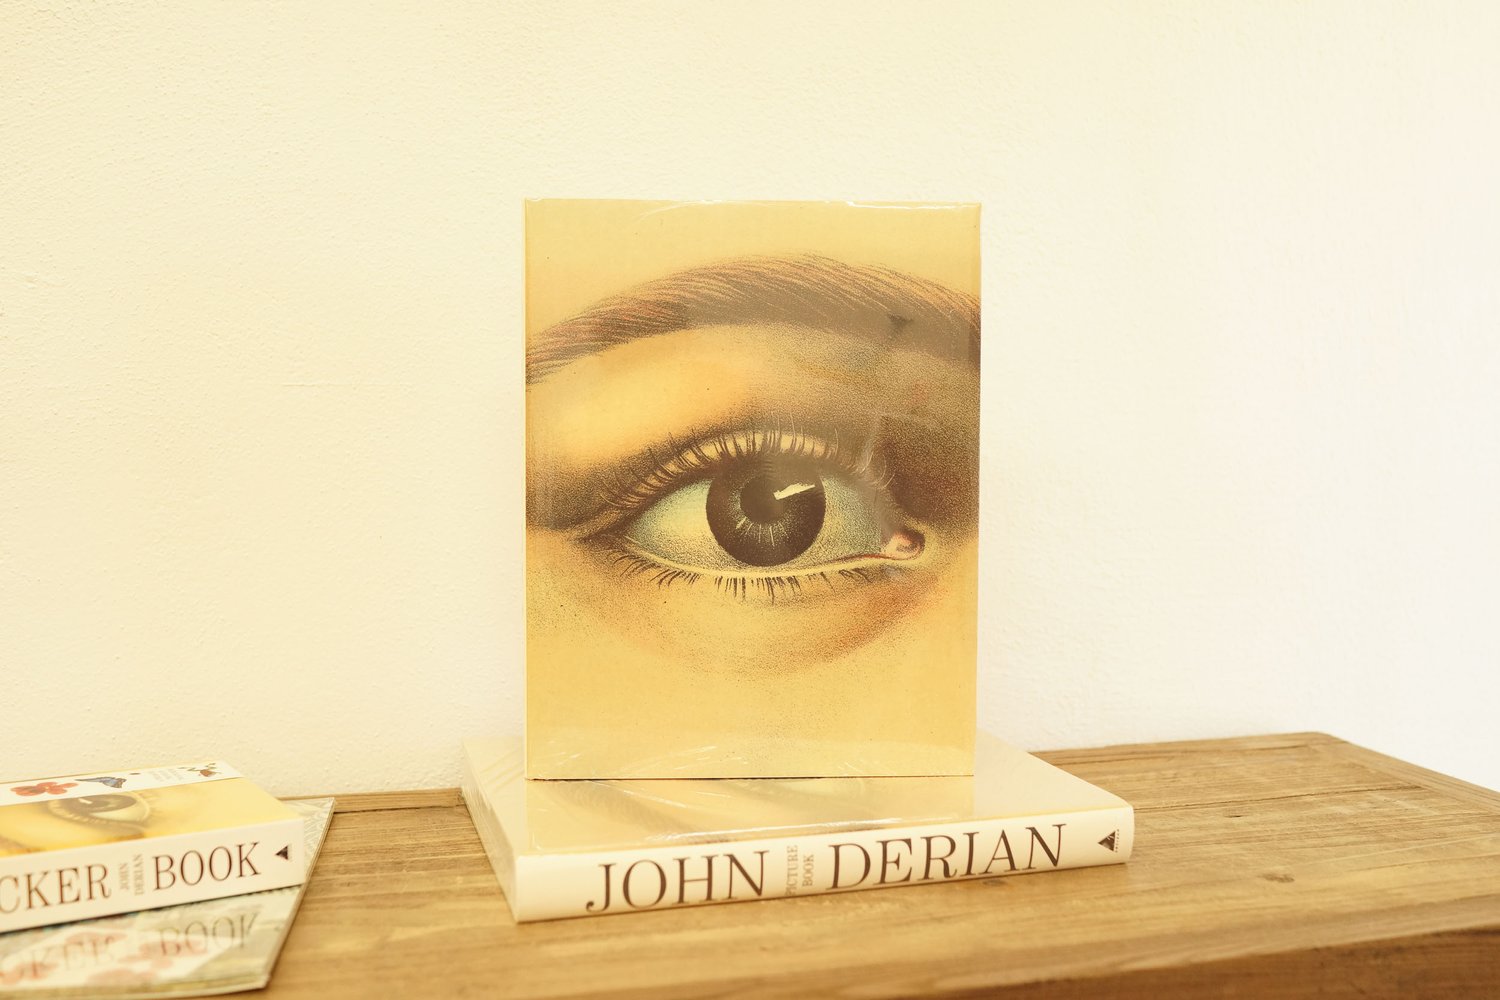 John Derian Picture Book [Book]